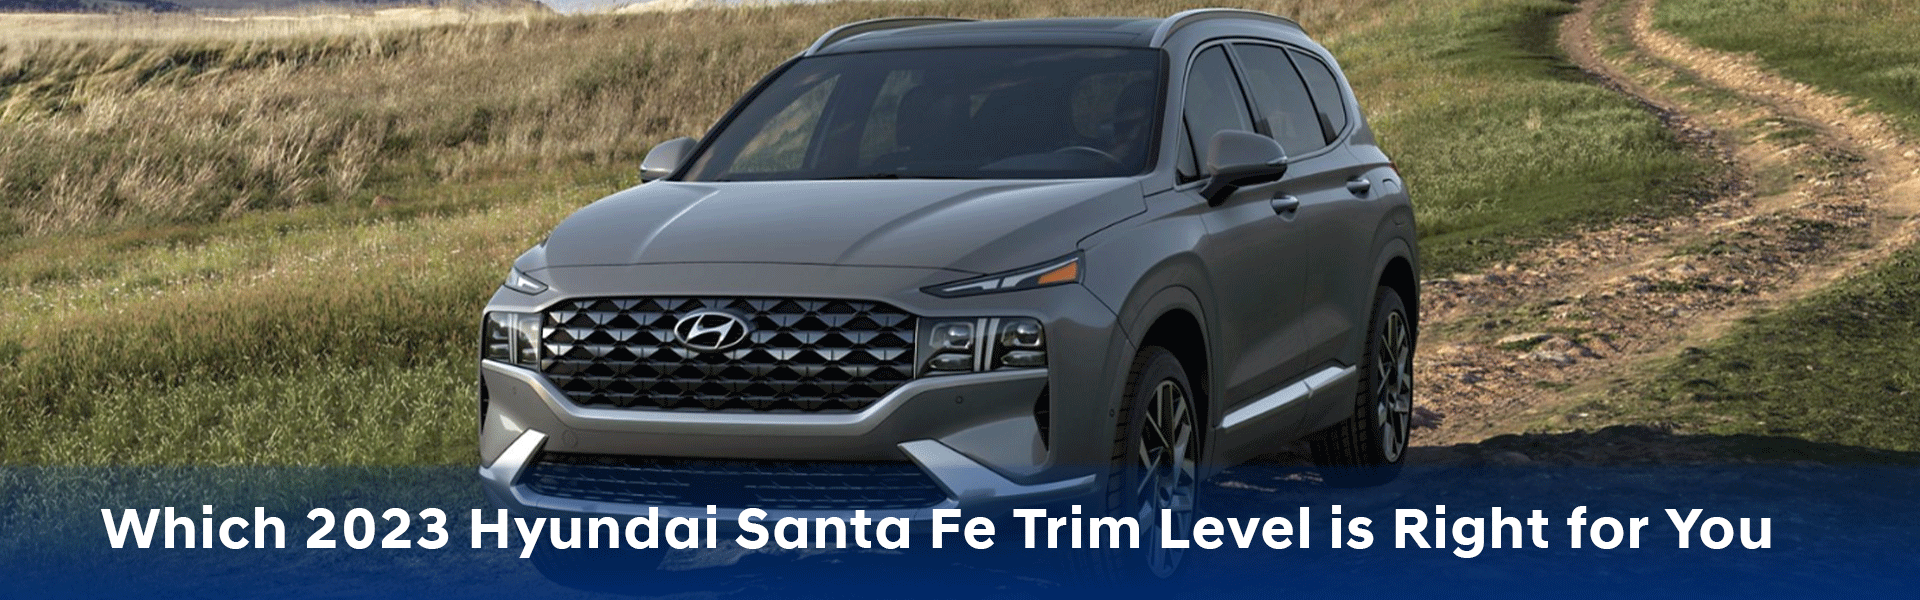 Hyundai Santa Fe Trim Levels